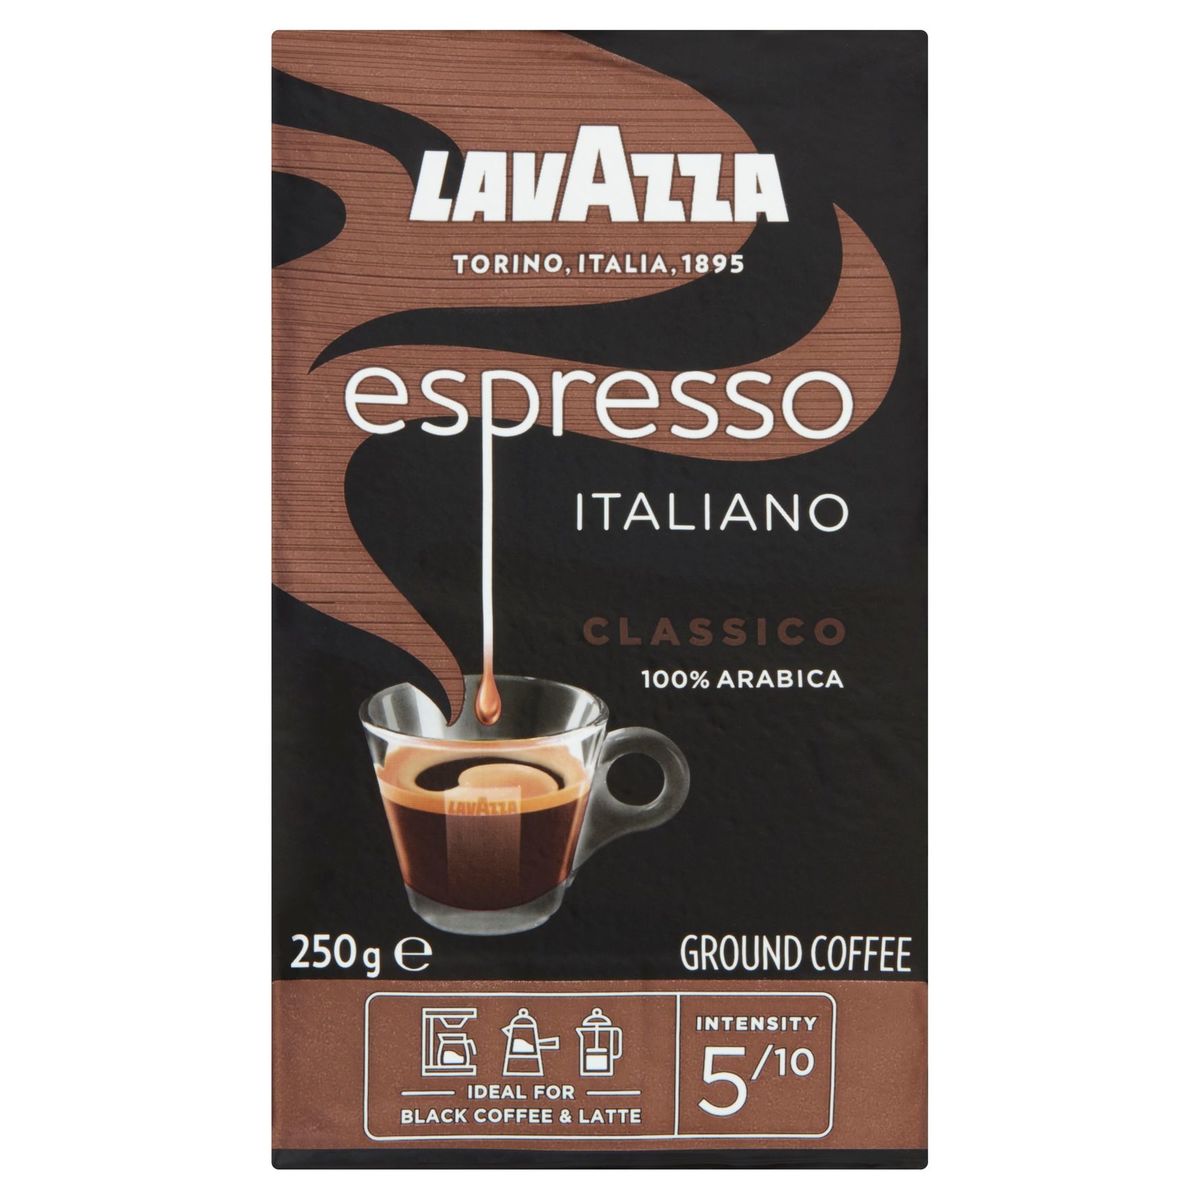 Lavazza Espresso Italiano Classico Ground Coffee 250 g